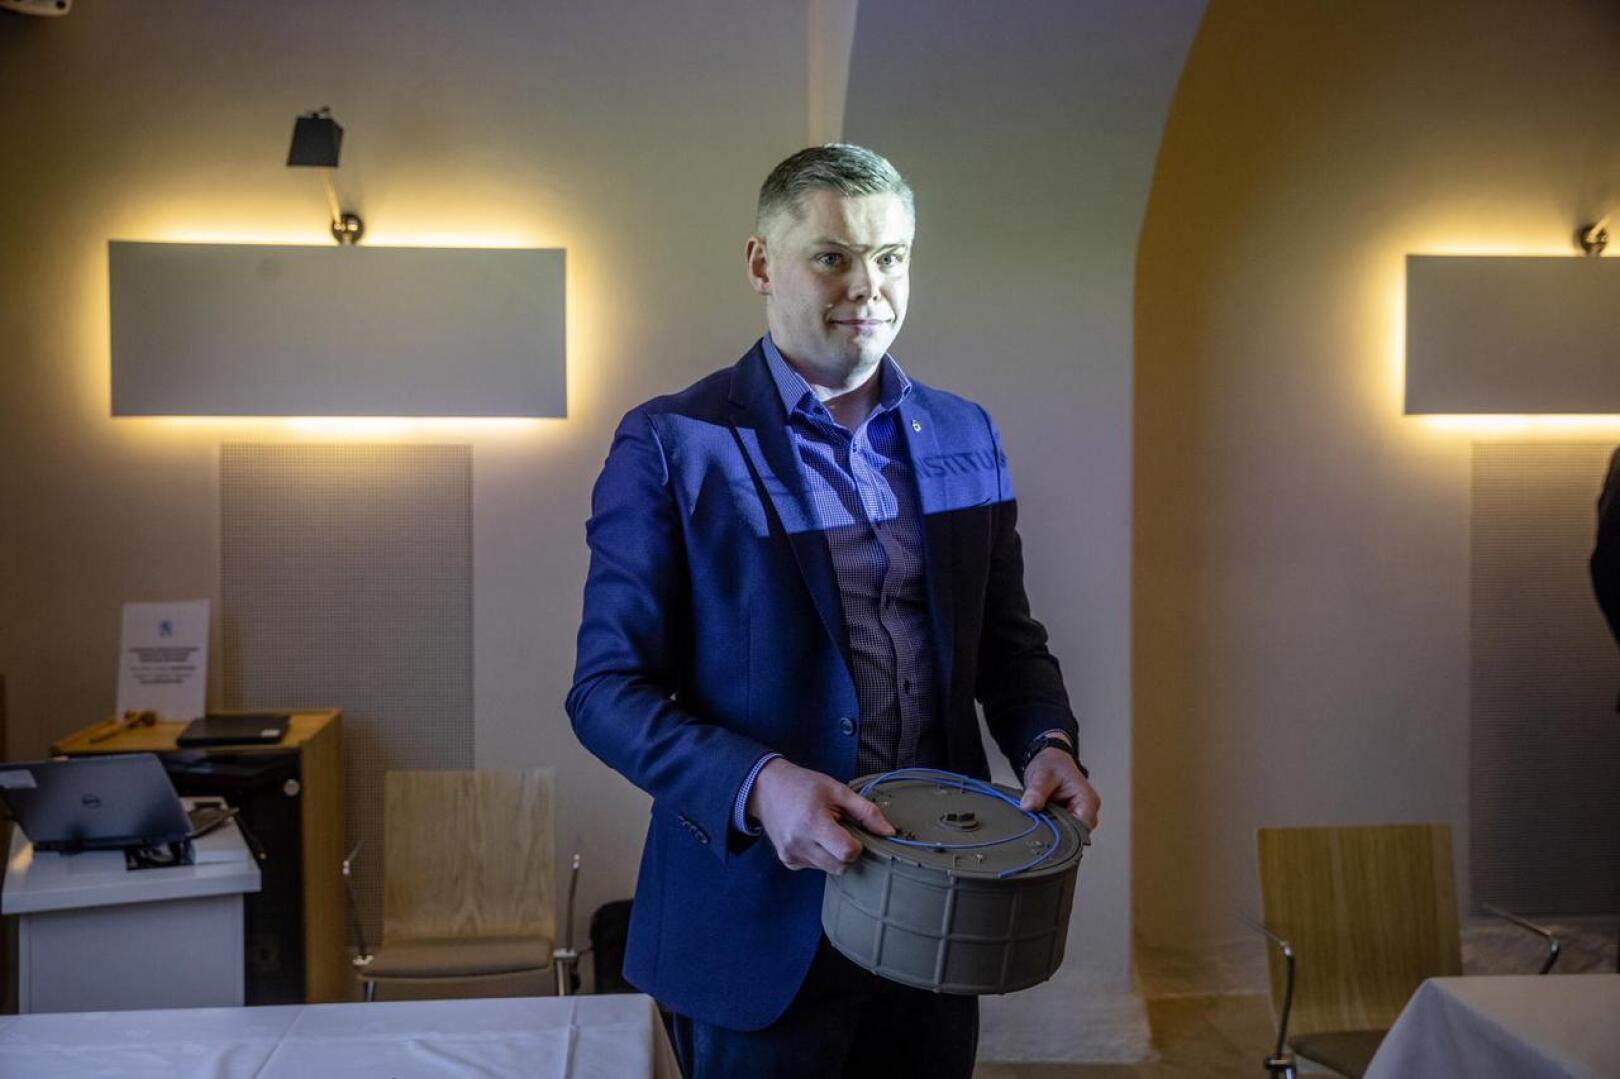 Leijona Instituutin toimitusjohtaja Juho Kalliala esitteli keksimäänsä hyppypanosta Puolustusministeriön edustustilassa viime maaliskuussa.